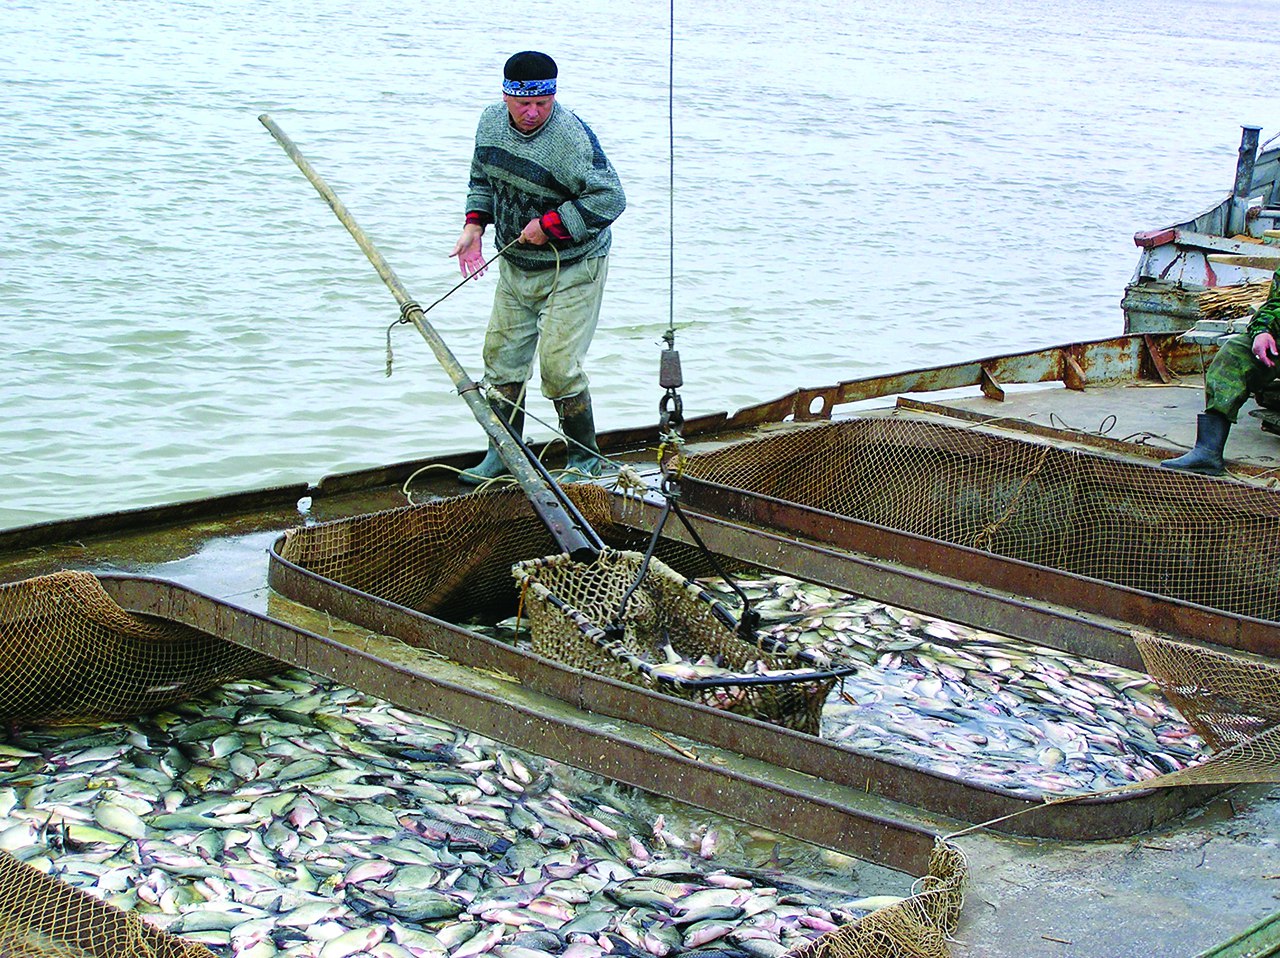 Какой промысел был распространен в районе астрахани. Рыбный промысел Астрахань. Рыбная промышленность Астраханская. Рыбный промысел в Астраханской области. Астраханский рыбный промысел, Астрахань.